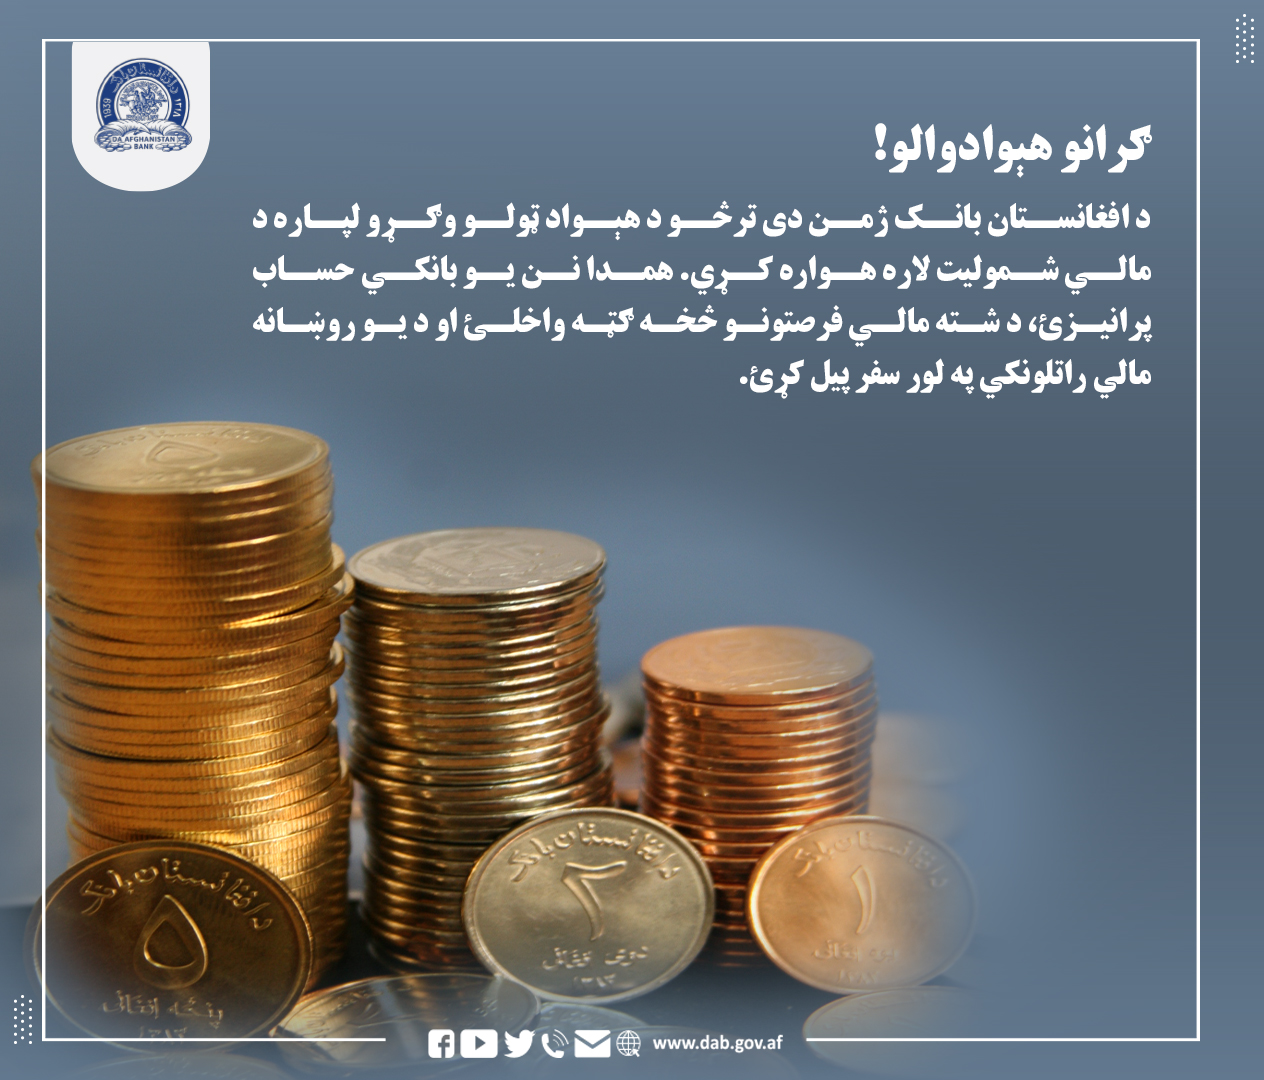 د افغانستان بانک ژمن دی ترڅو د هېواد ټول وګرو لپاره د مالی شمولیت لاره همواره کړی.